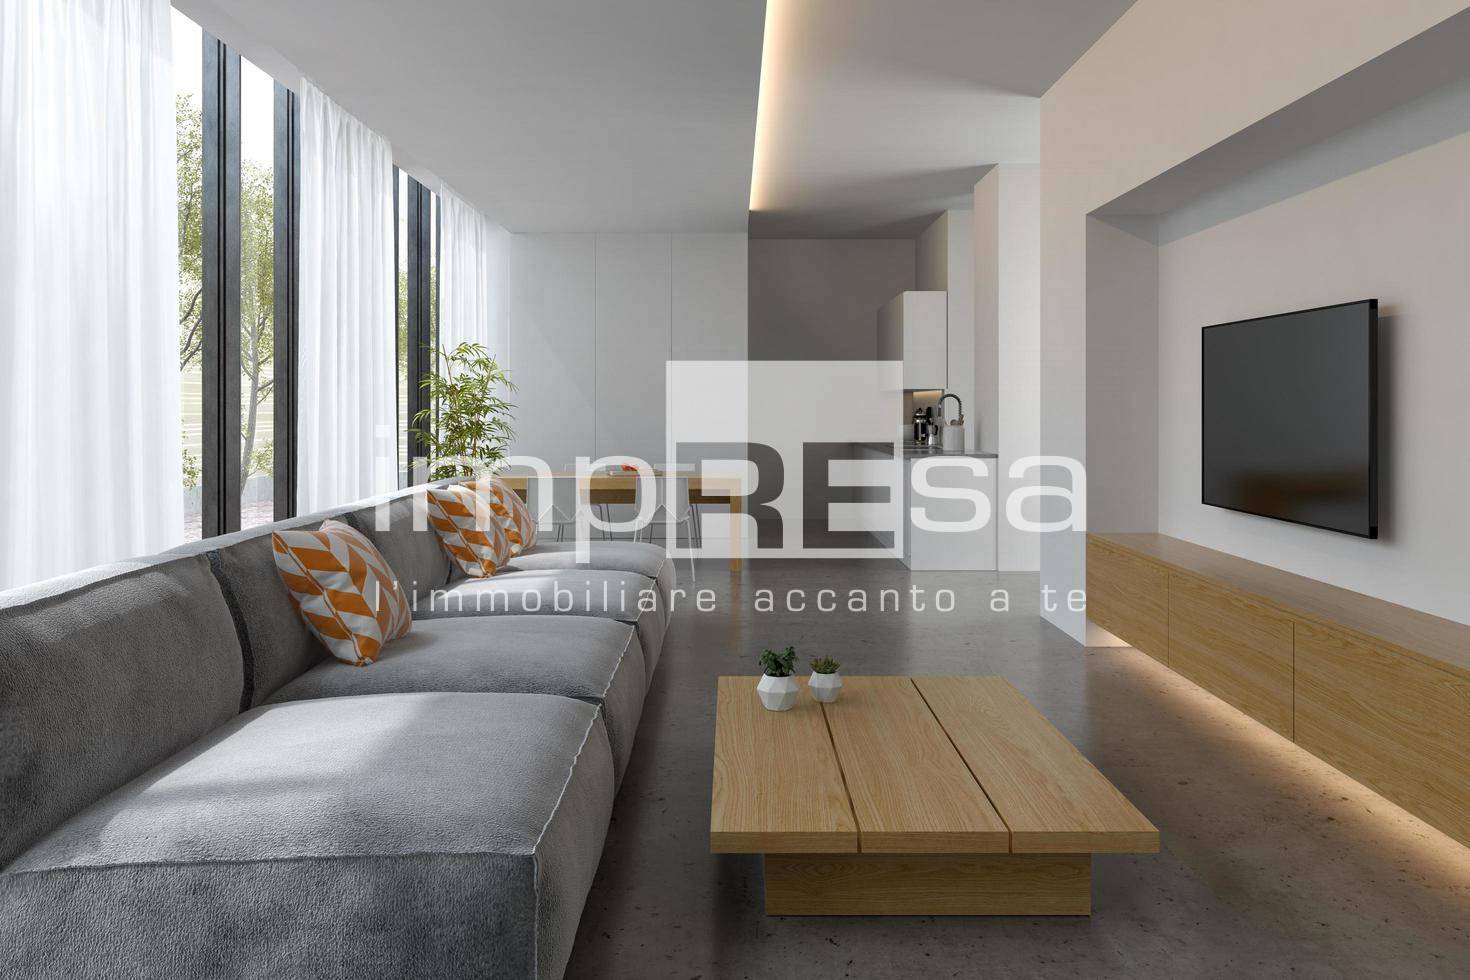 Appartamento in vendita a Scorzè, 4 locali, prezzo € 367.000 | PortaleAgenzieImmobiliari.it